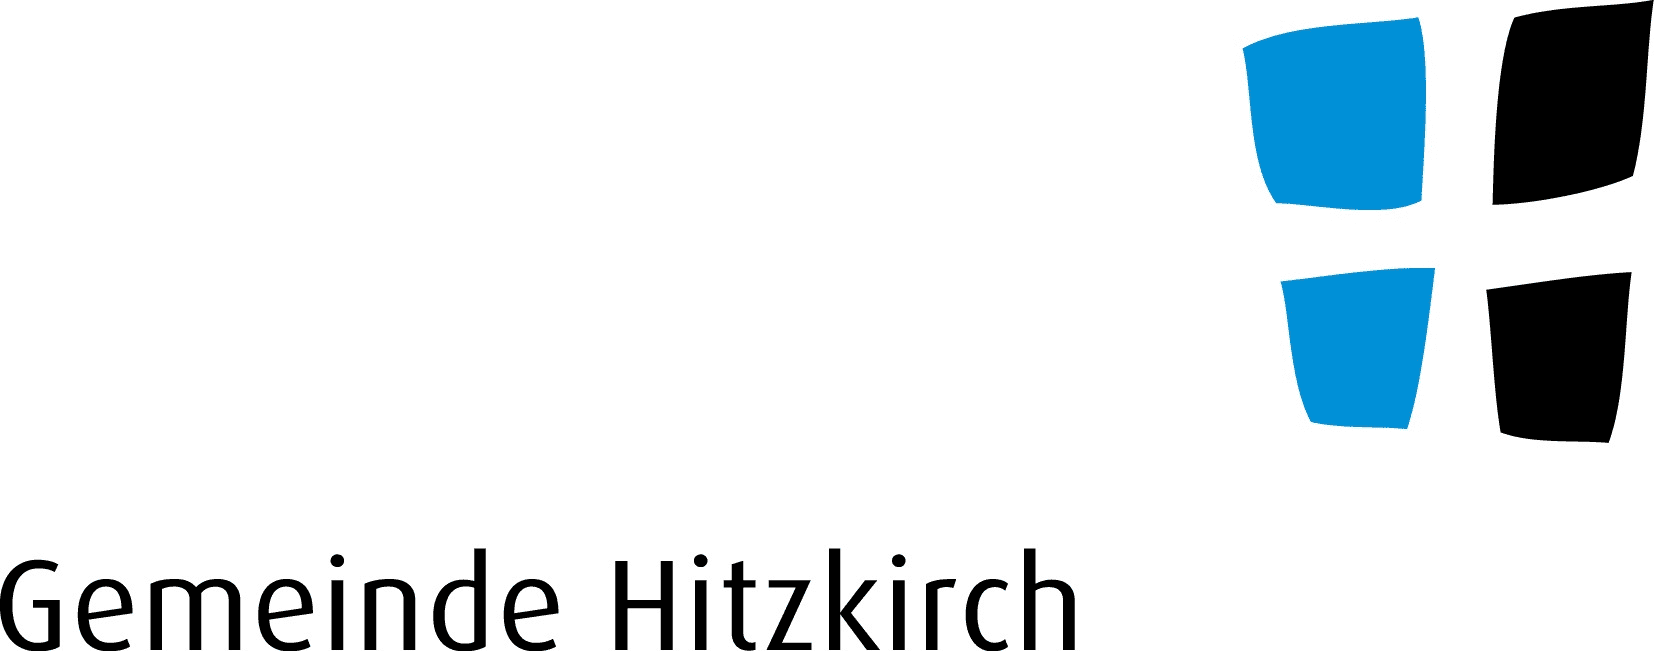 Gemeinde Hitzkirch